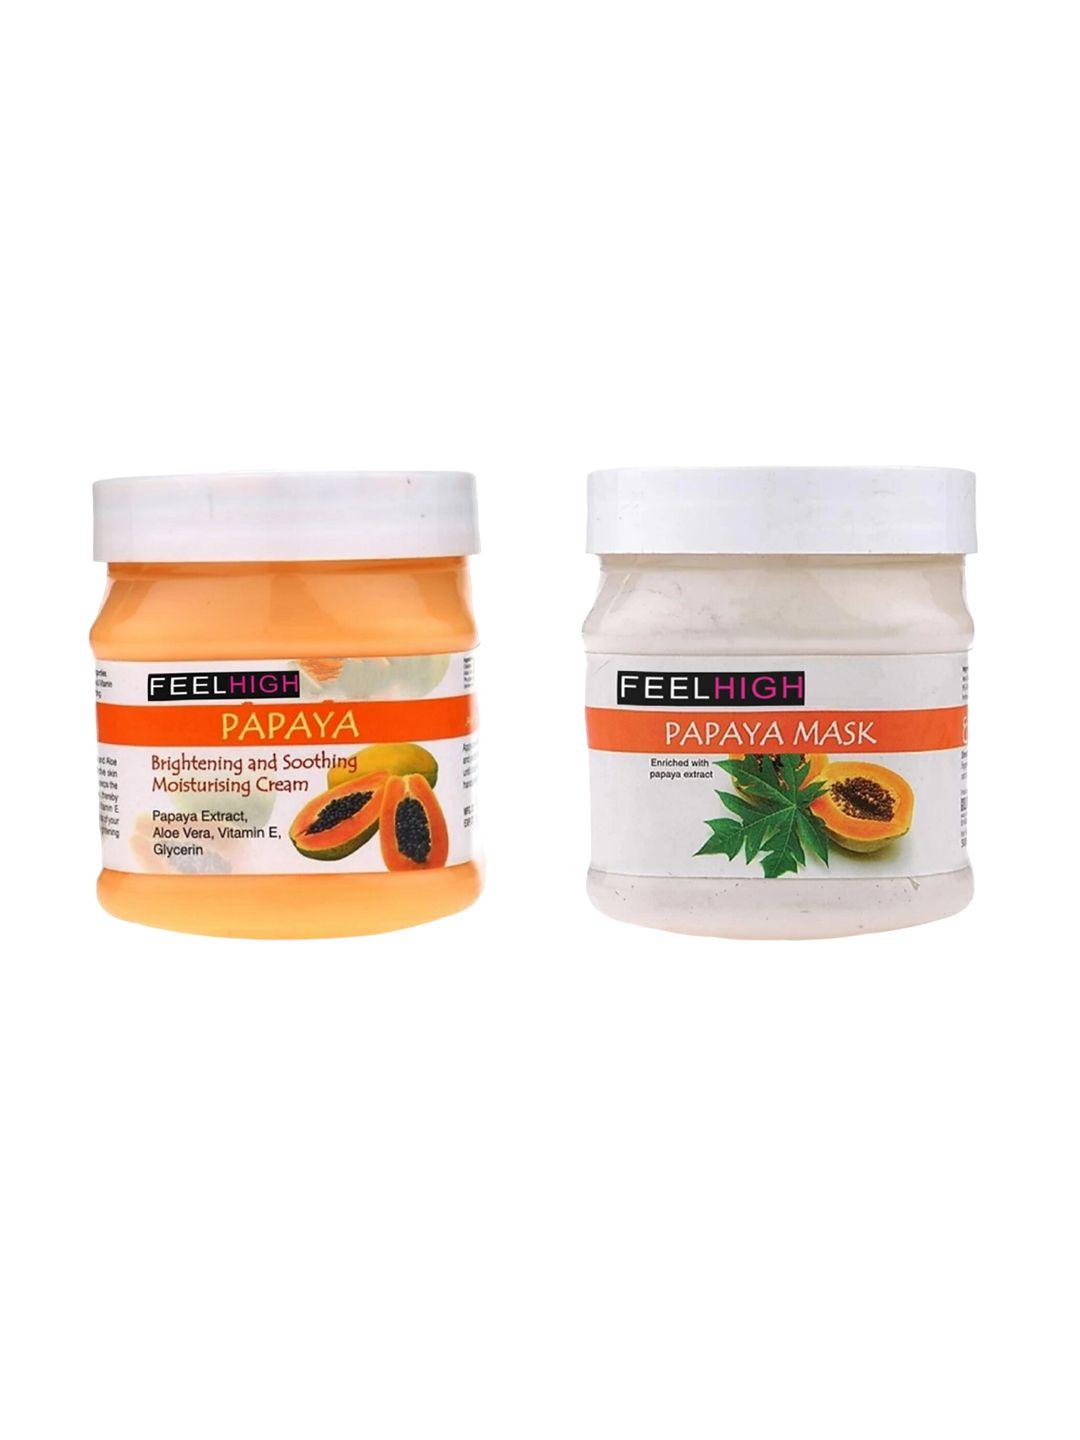 feelhigh set of papaya moisturizer cream & papaya mask - 500 g each